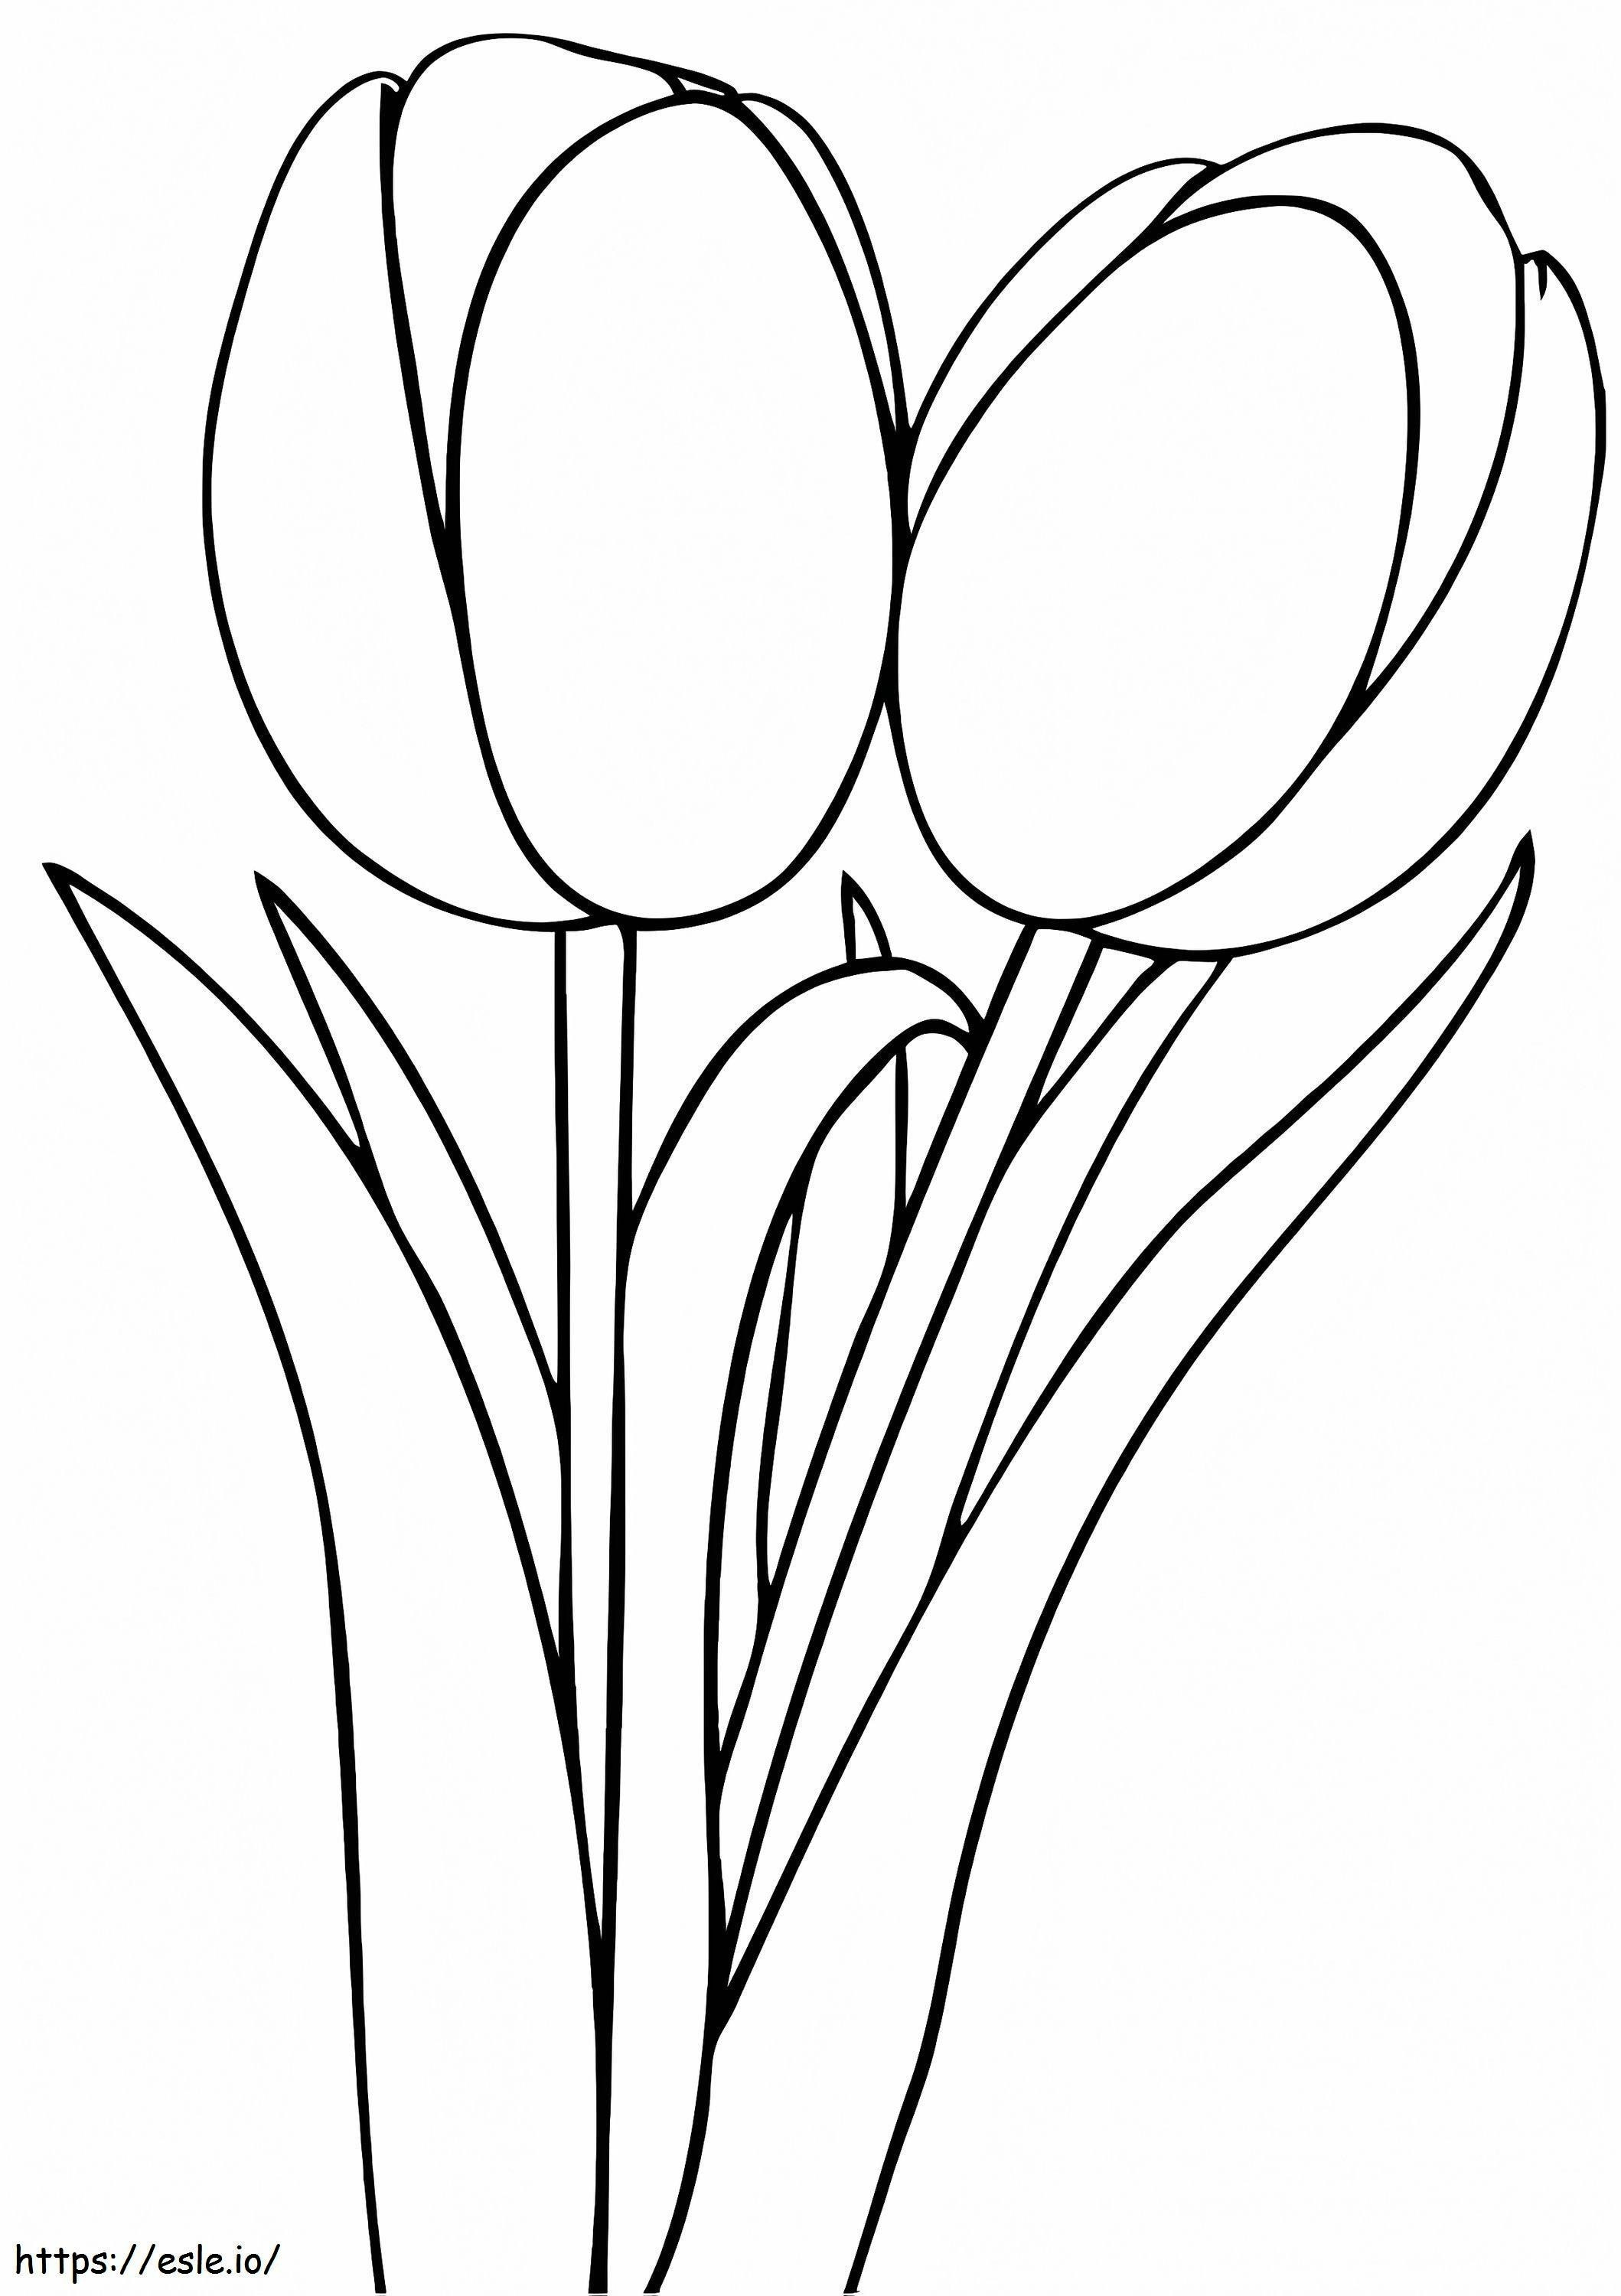 Coloriage Tulipe simple à imprimer dessin